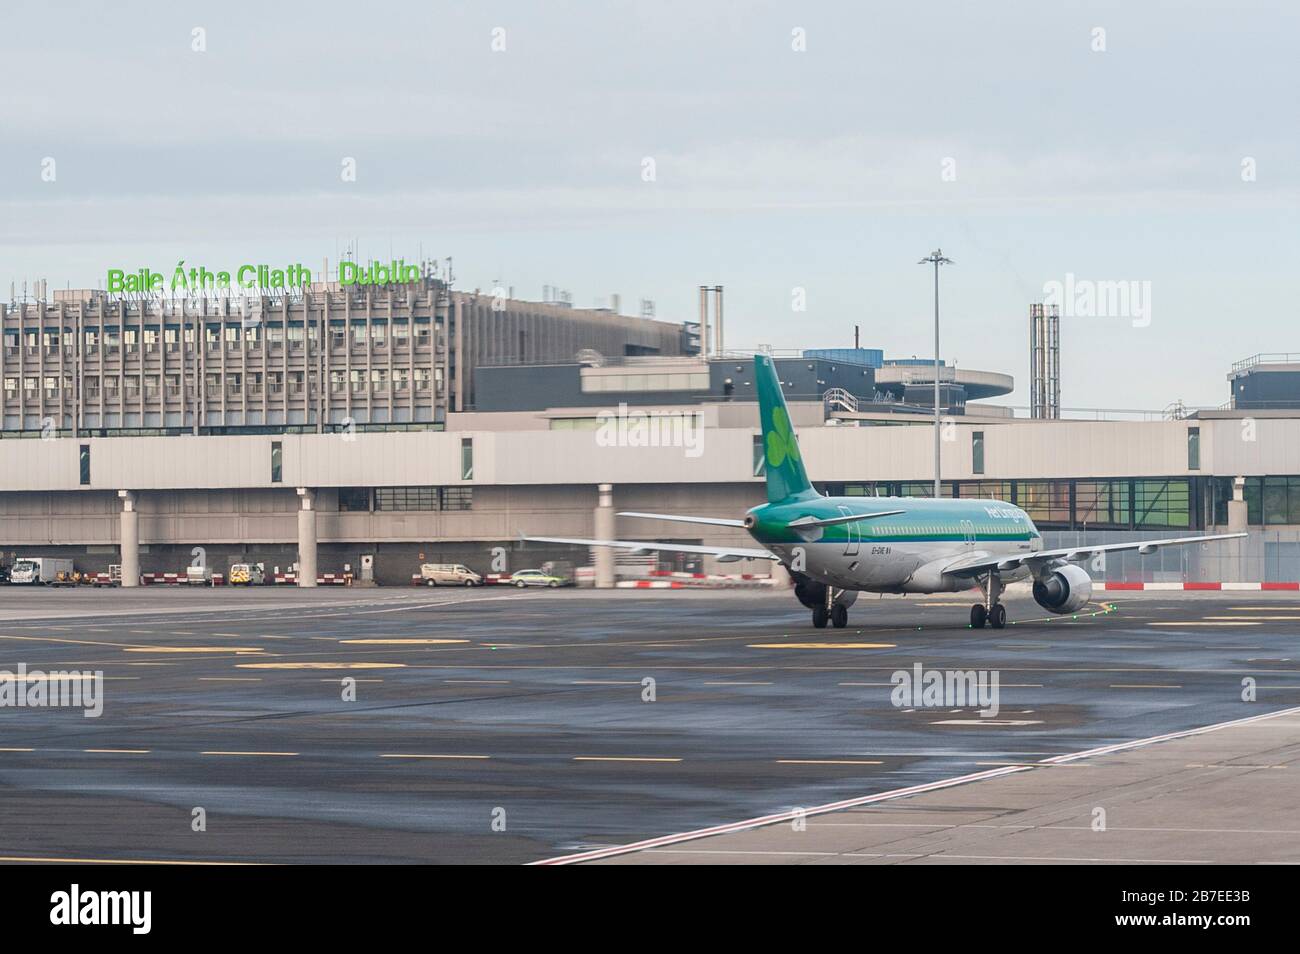 AER Lingus A 320-214, avion, reg EI-DVE taxis à l'aéroport de Dublin, Dublin, Irlande. Banque D'Images